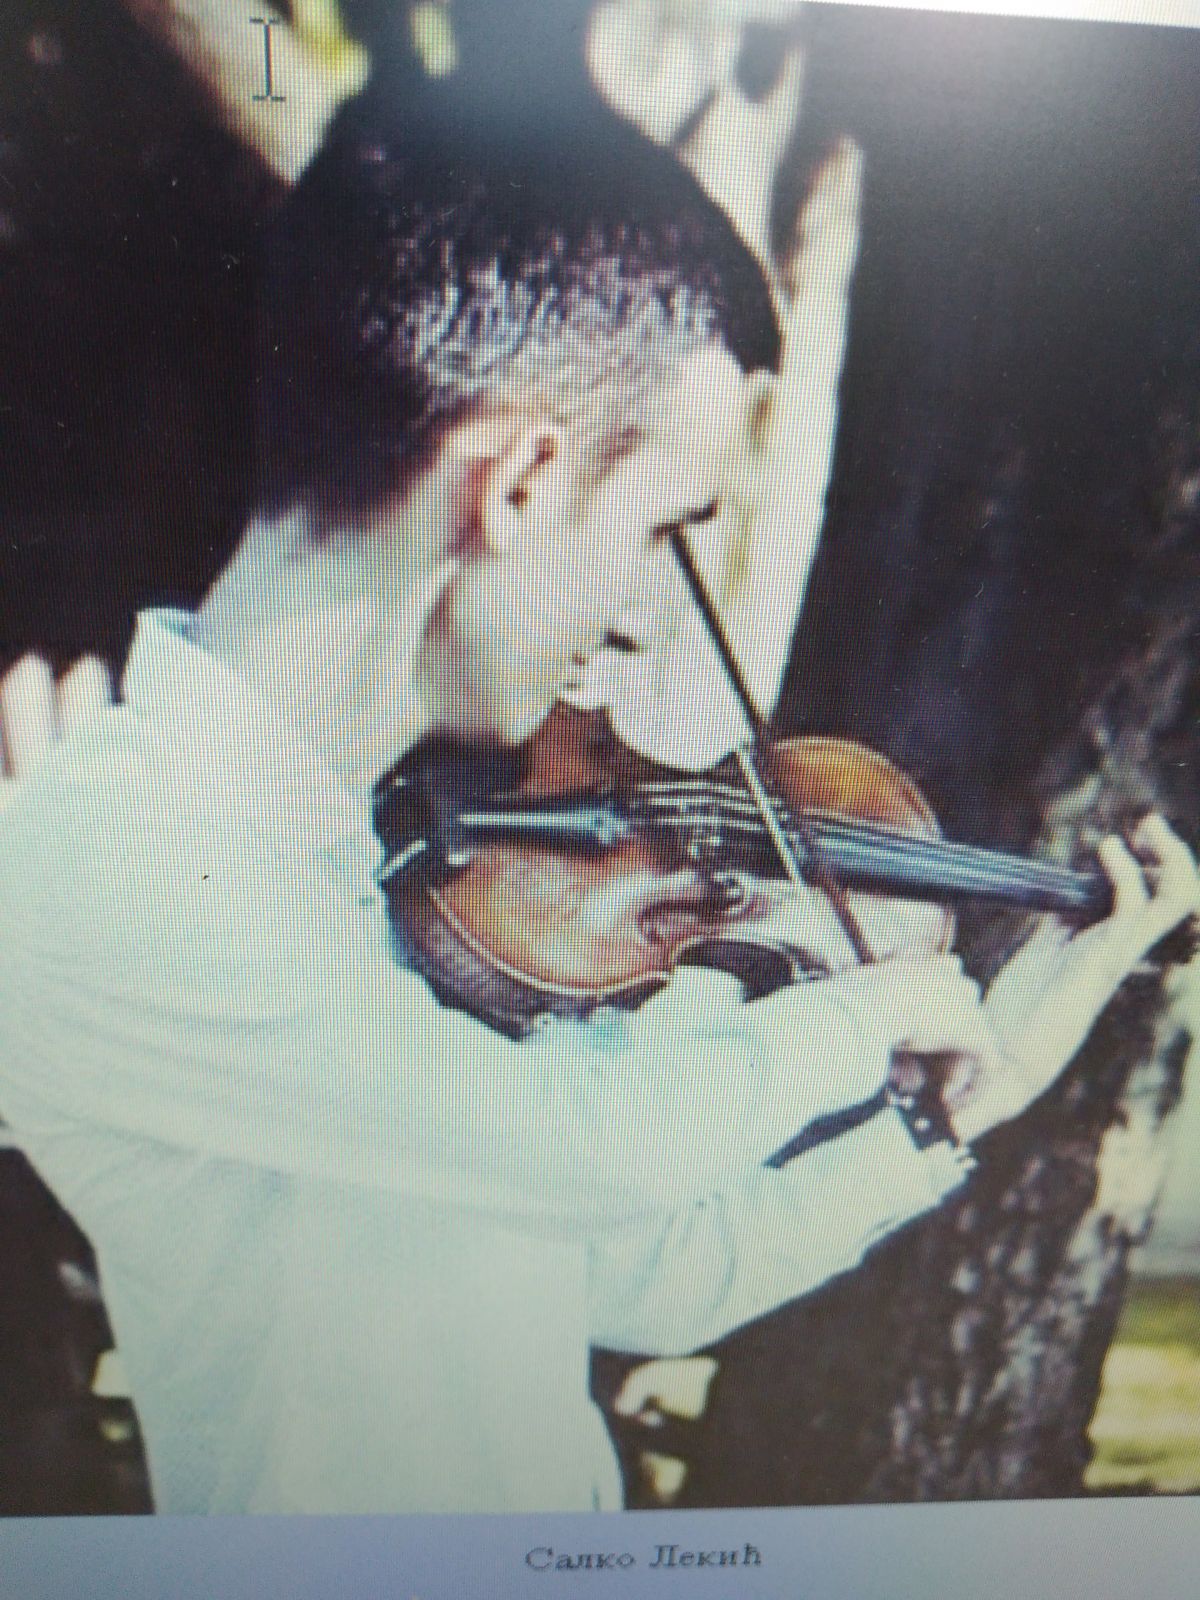 Korona ugrozila masters studije u Jerusalimu mladog šabačkog violiniste Salka Lekića